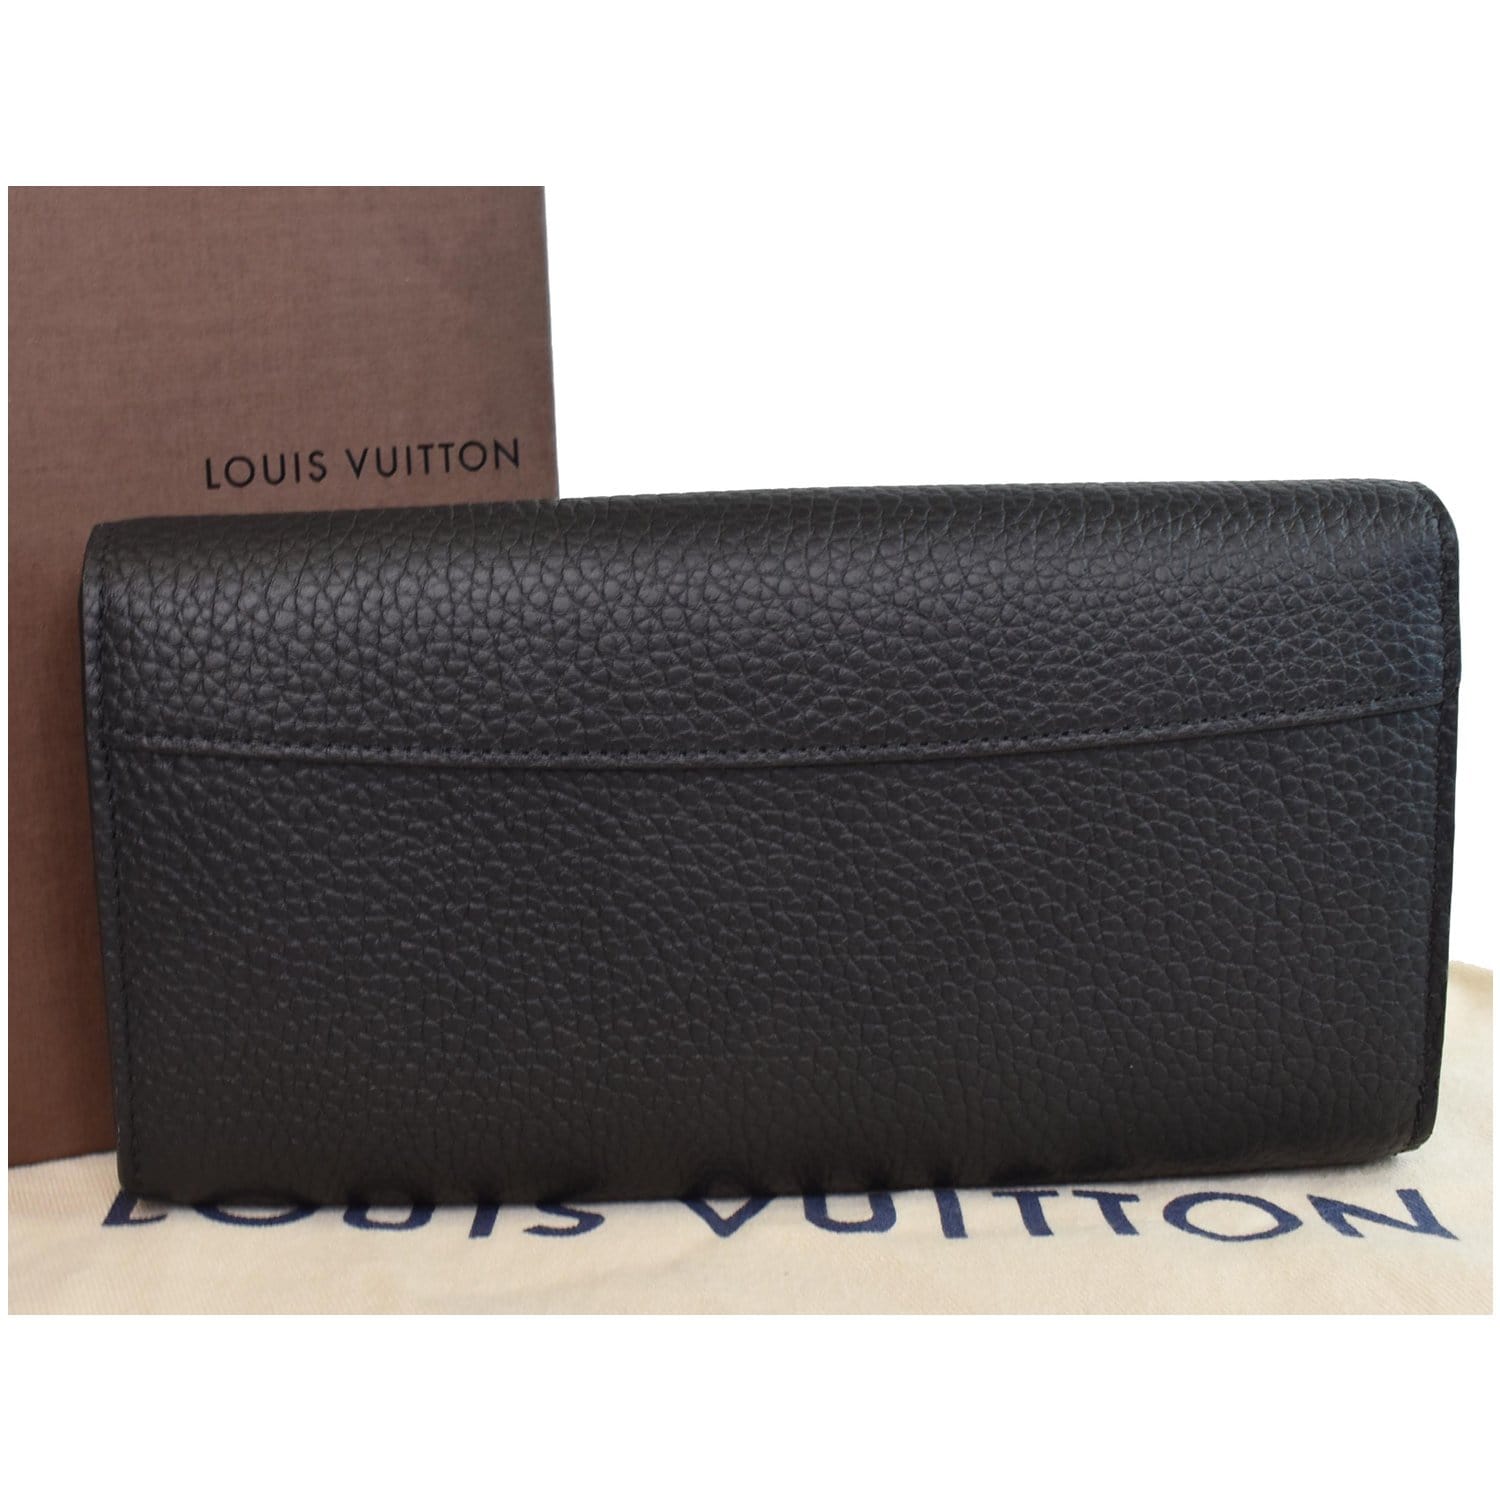 LOUIS VUITTON Taurillon Capucines XS Wallet Black 1285531